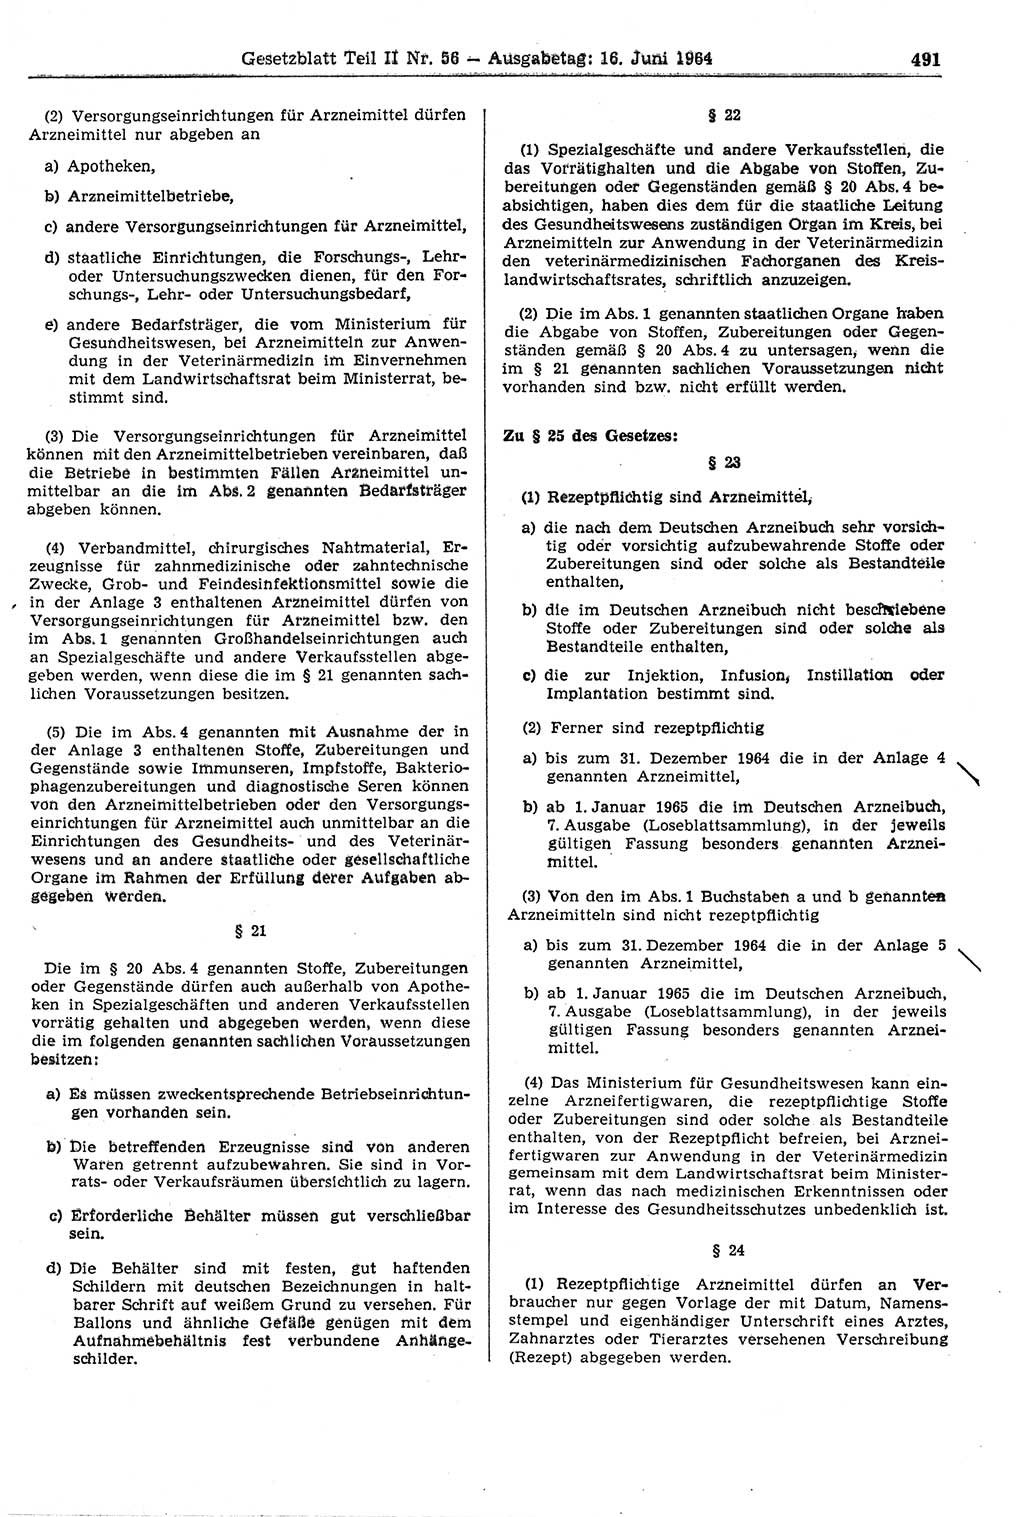 Gesetzblatt (GBl.) der Deutschen Demokratischen Republik (DDR) Teil ⅠⅠ 1964, Seite 491 (GBl. DDR ⅠⅠ 1964, S. 491)